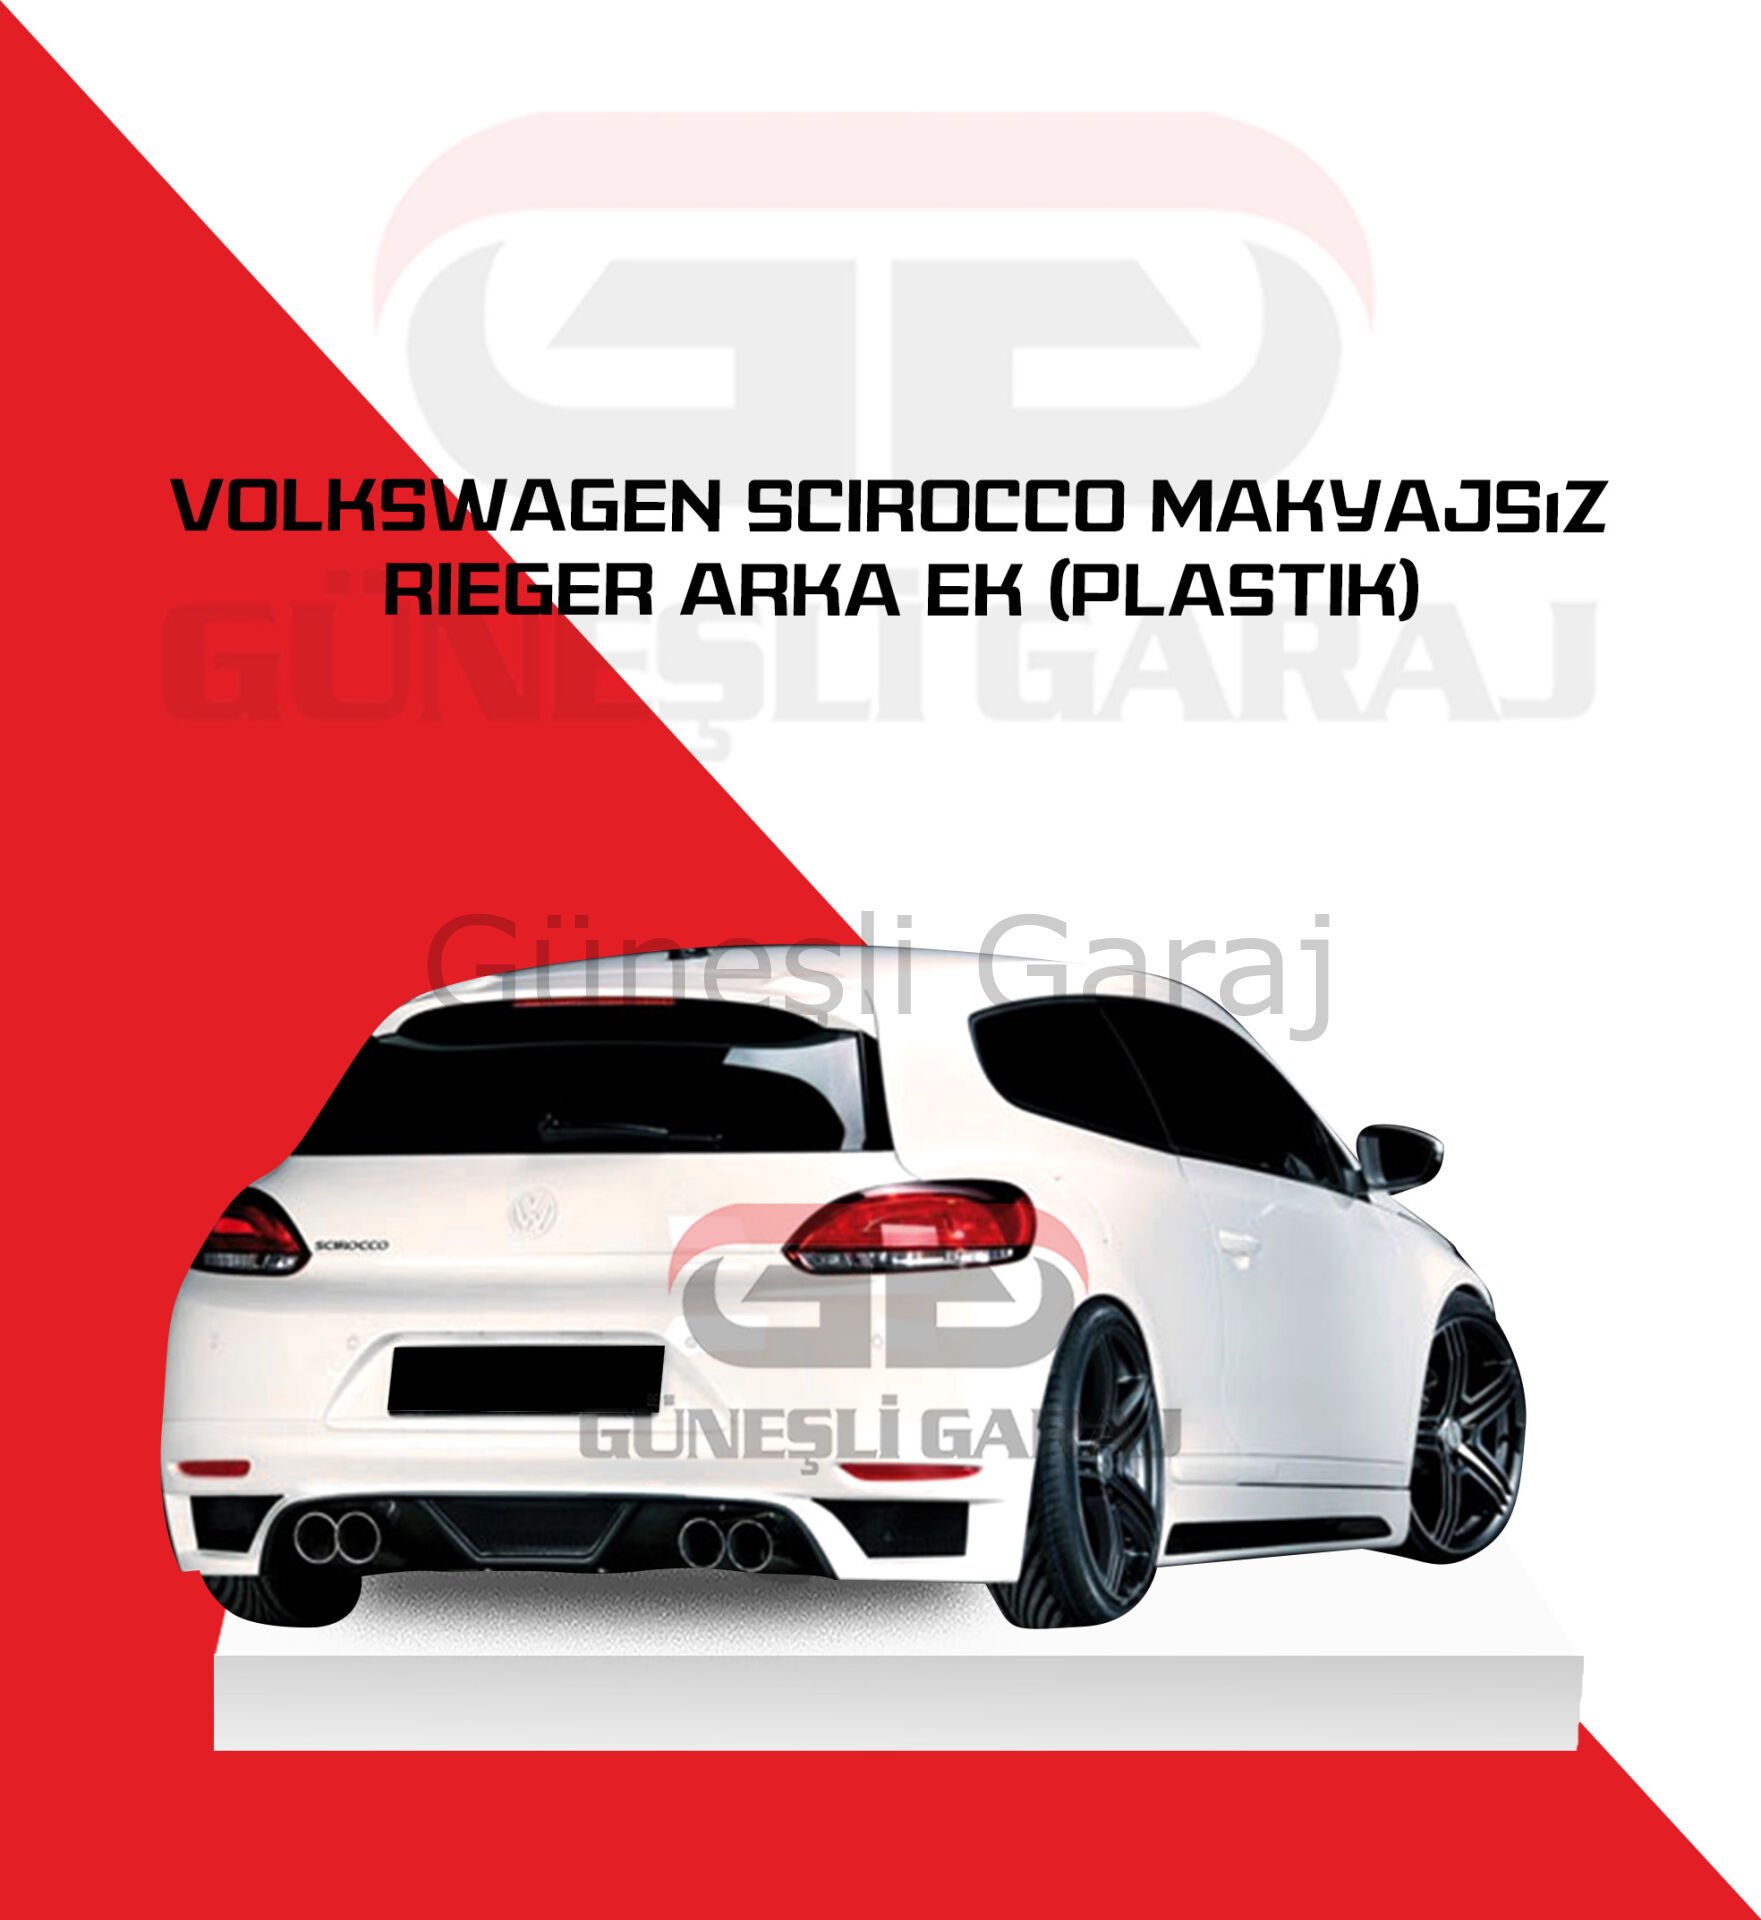 Volswagen Scirocco Makyajsız Rieger Arka Ek (Plastik)